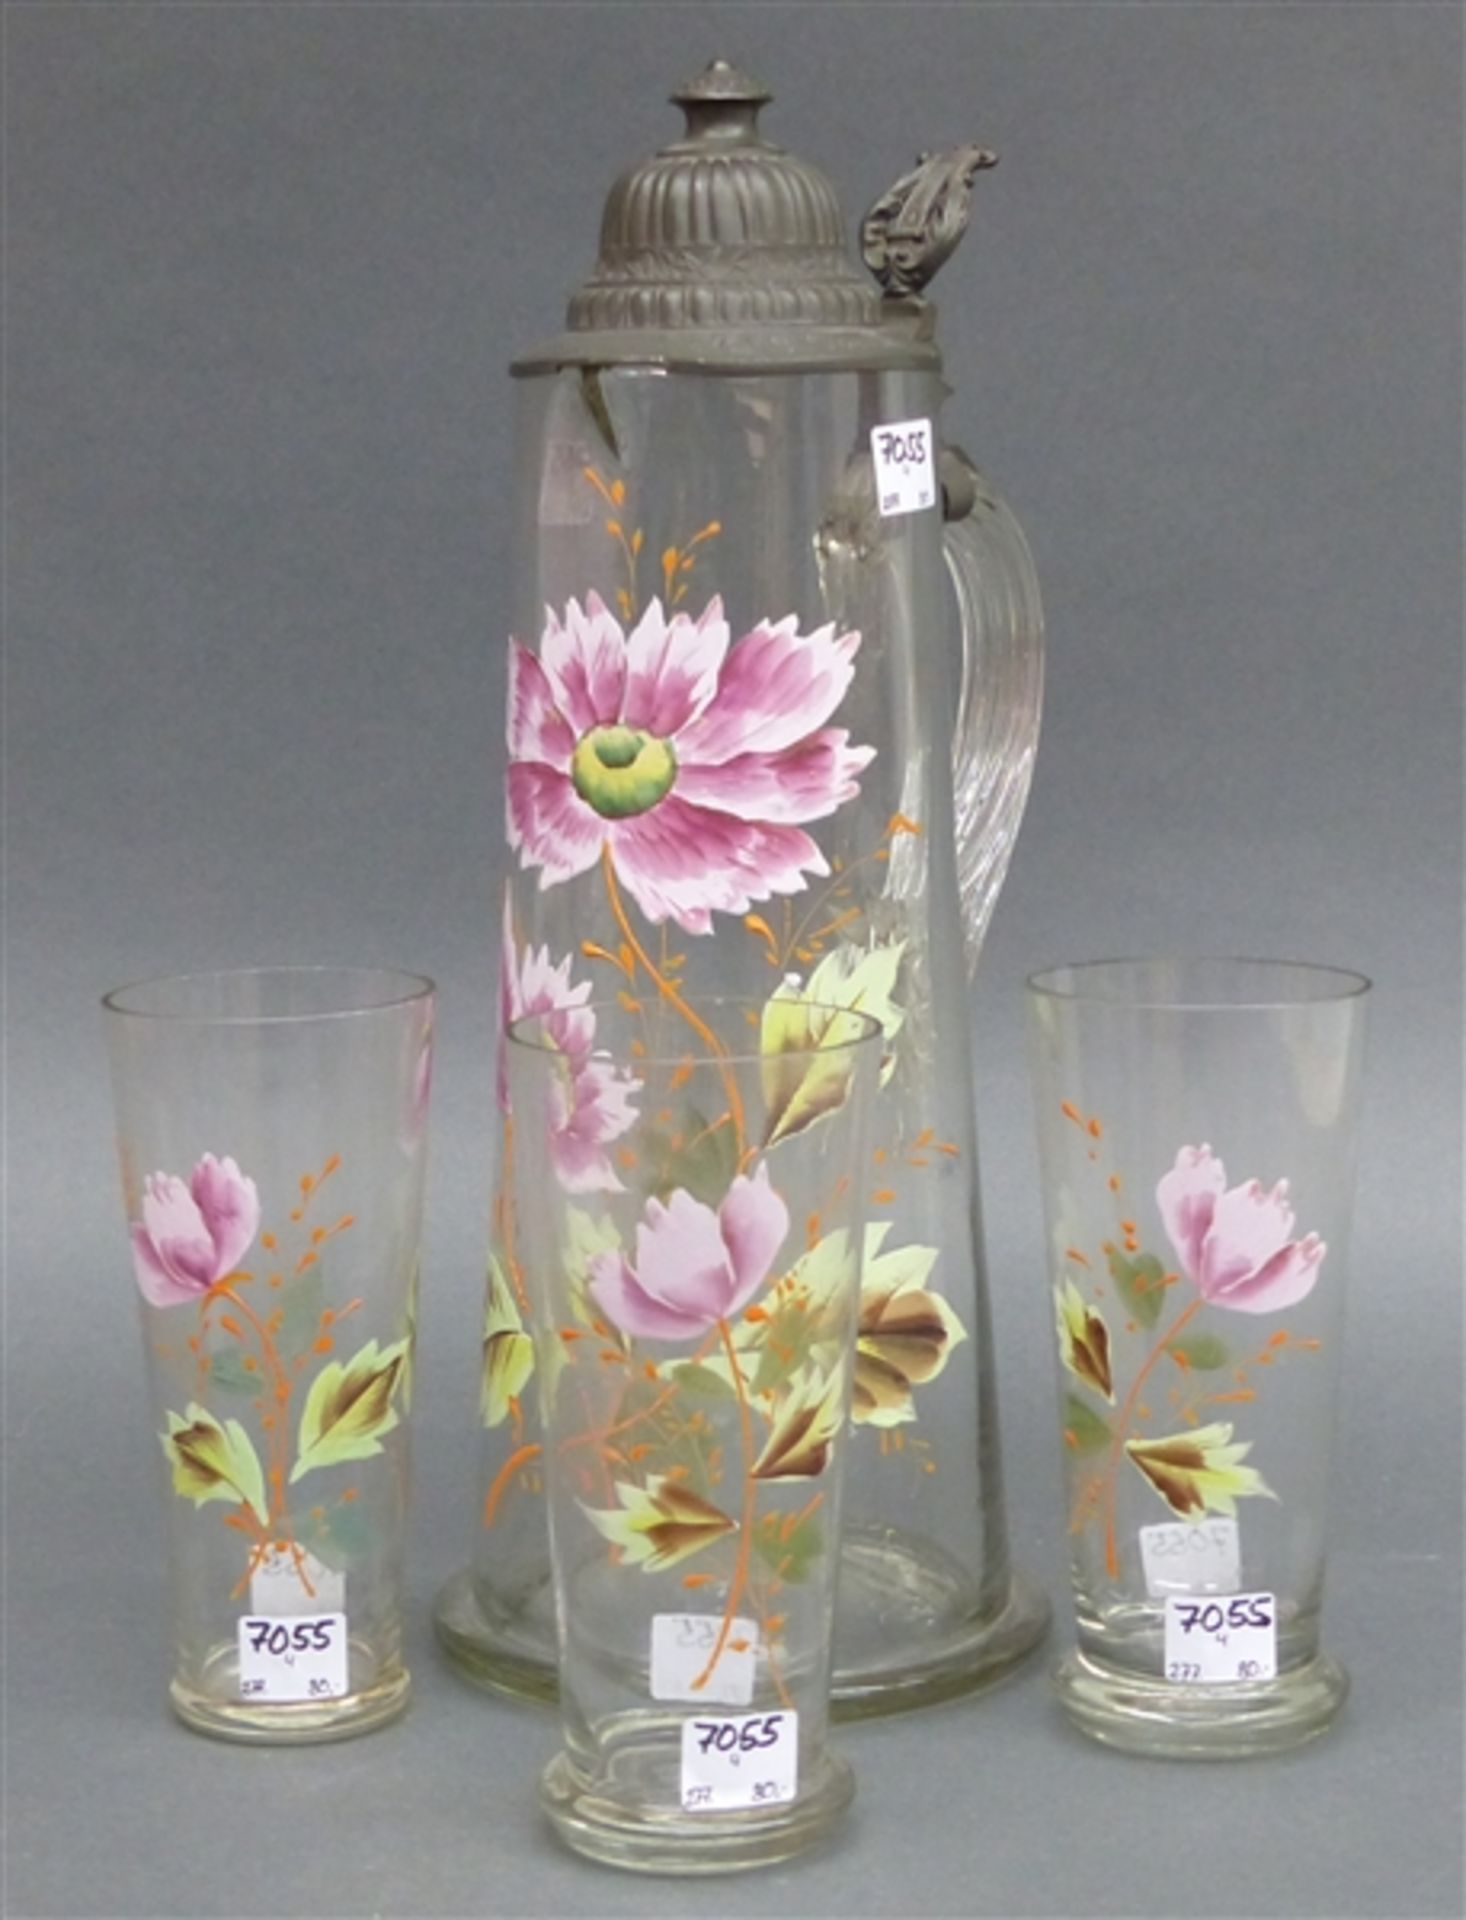 Saftkanne mit 3 Gläsern, farblos, floral bemalt, um 1900, Zinndeckel mit Gravur, Kanne h 36 cm,